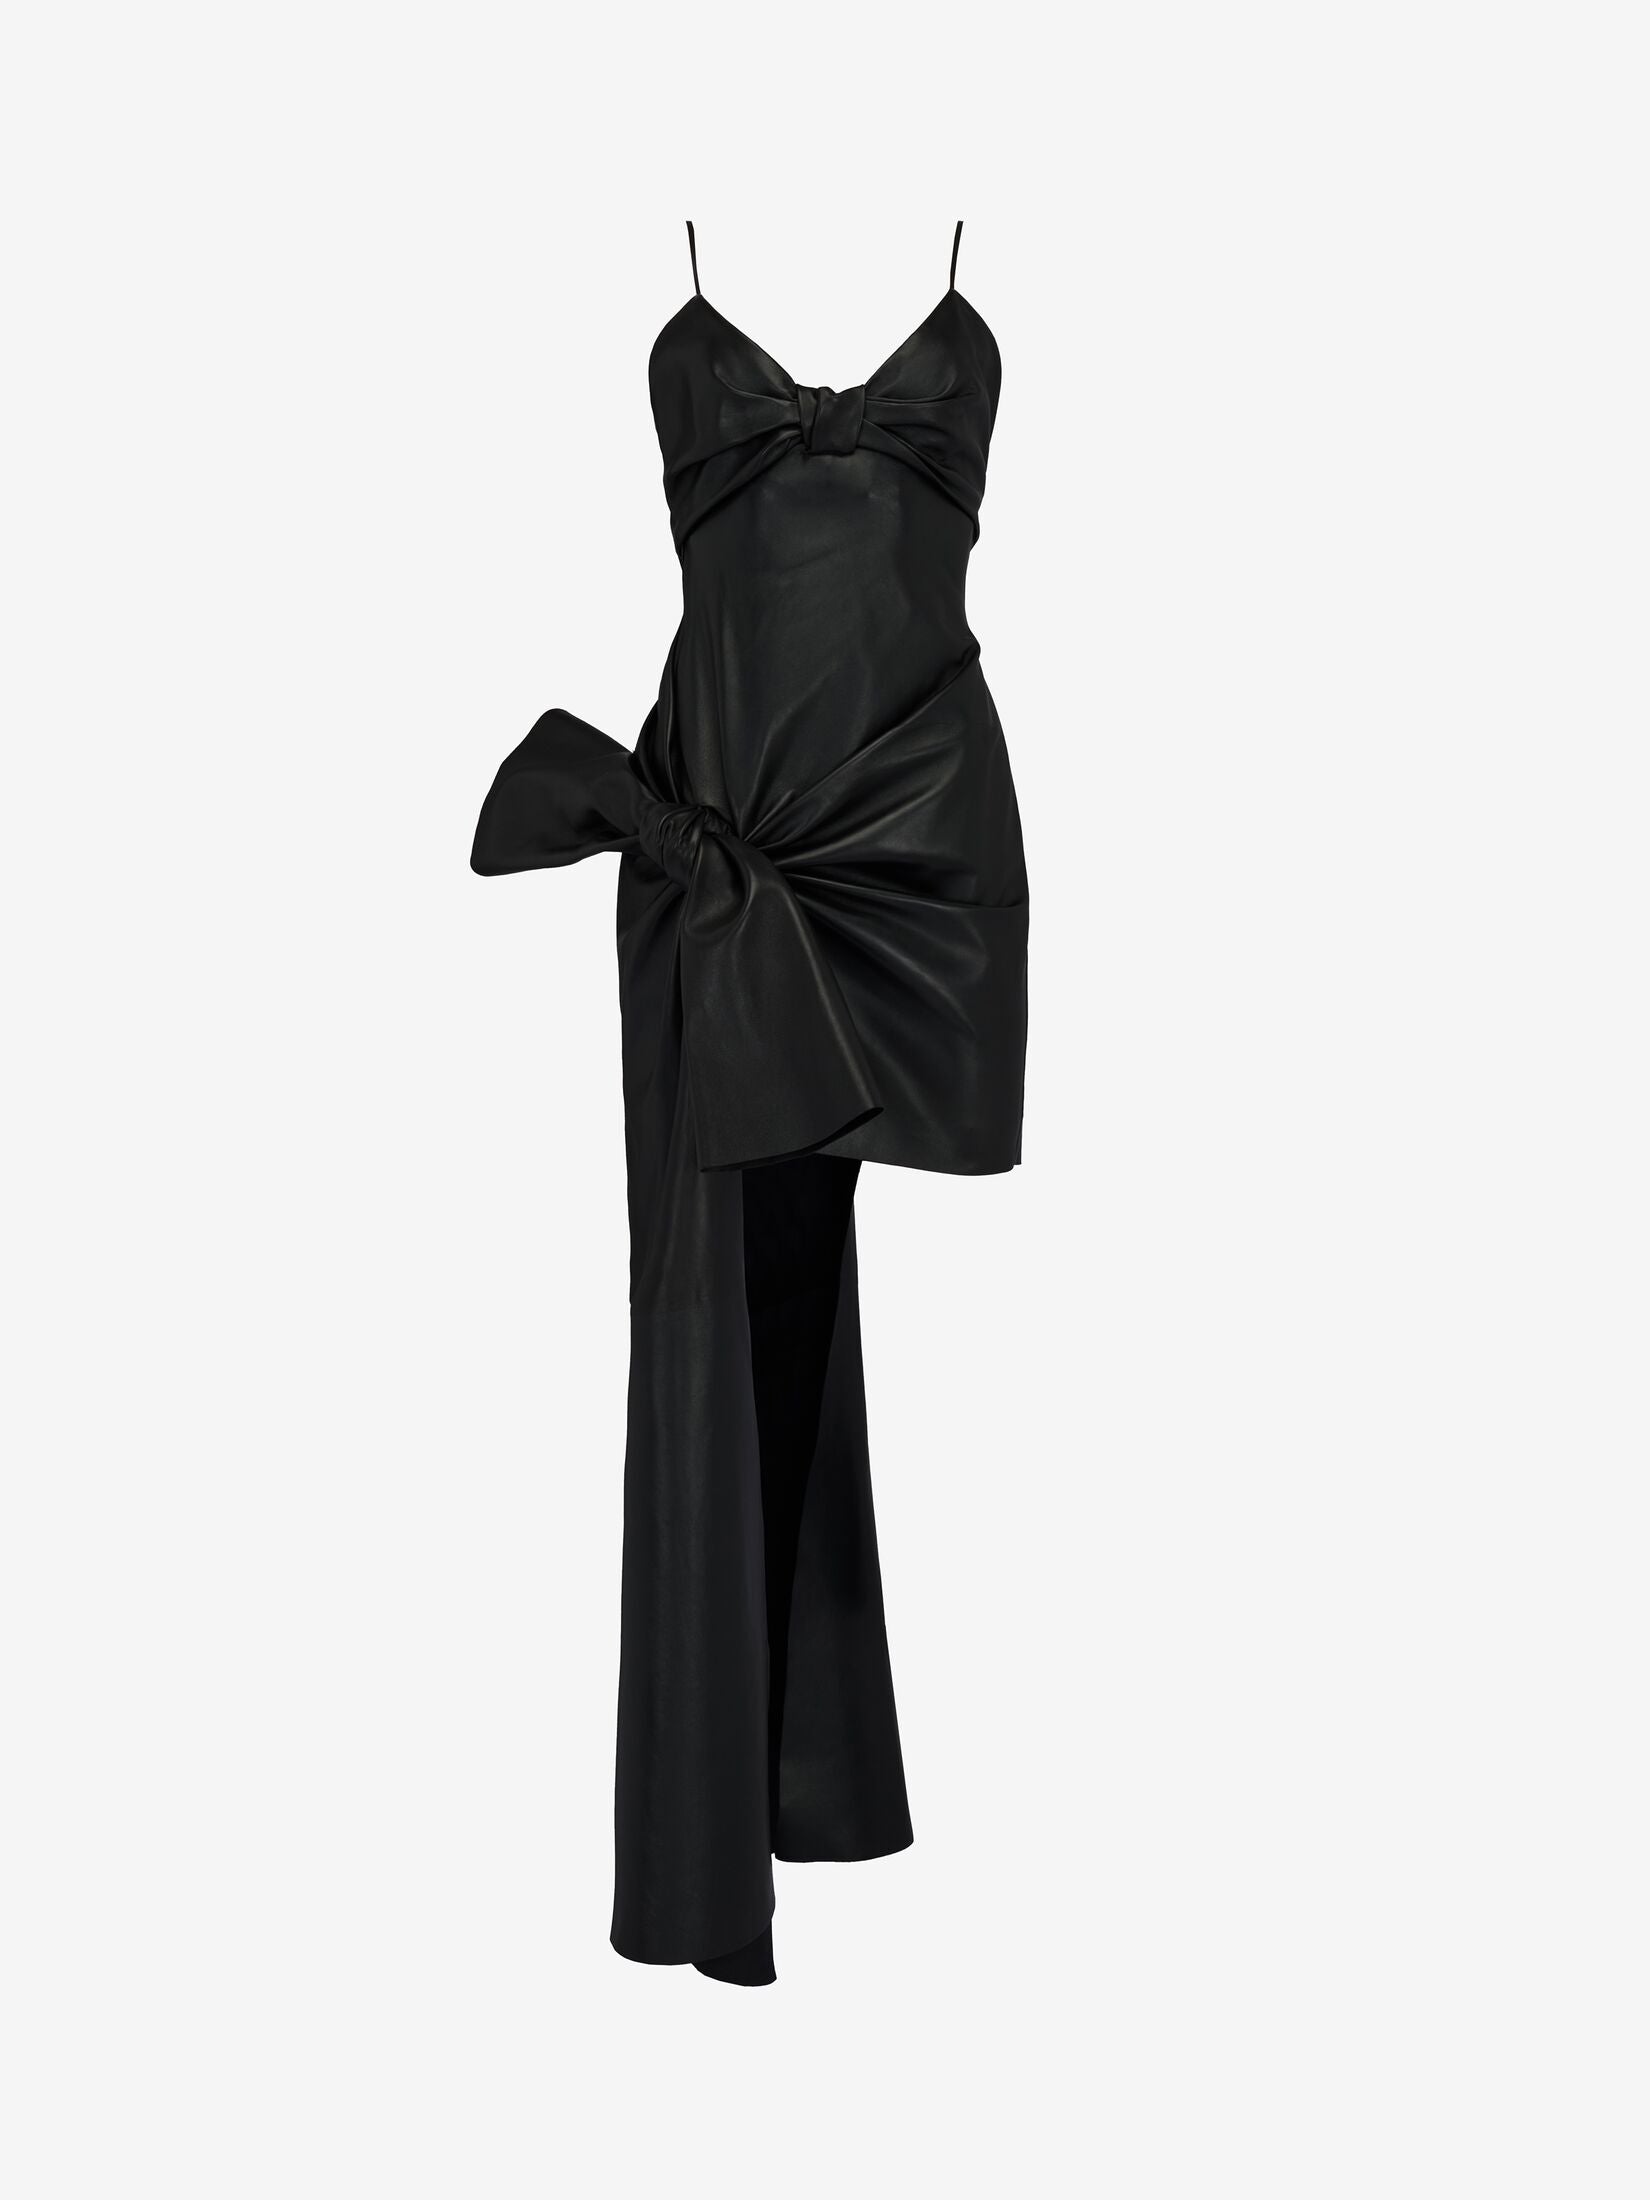 Women's Knotted Drape Dress in Black